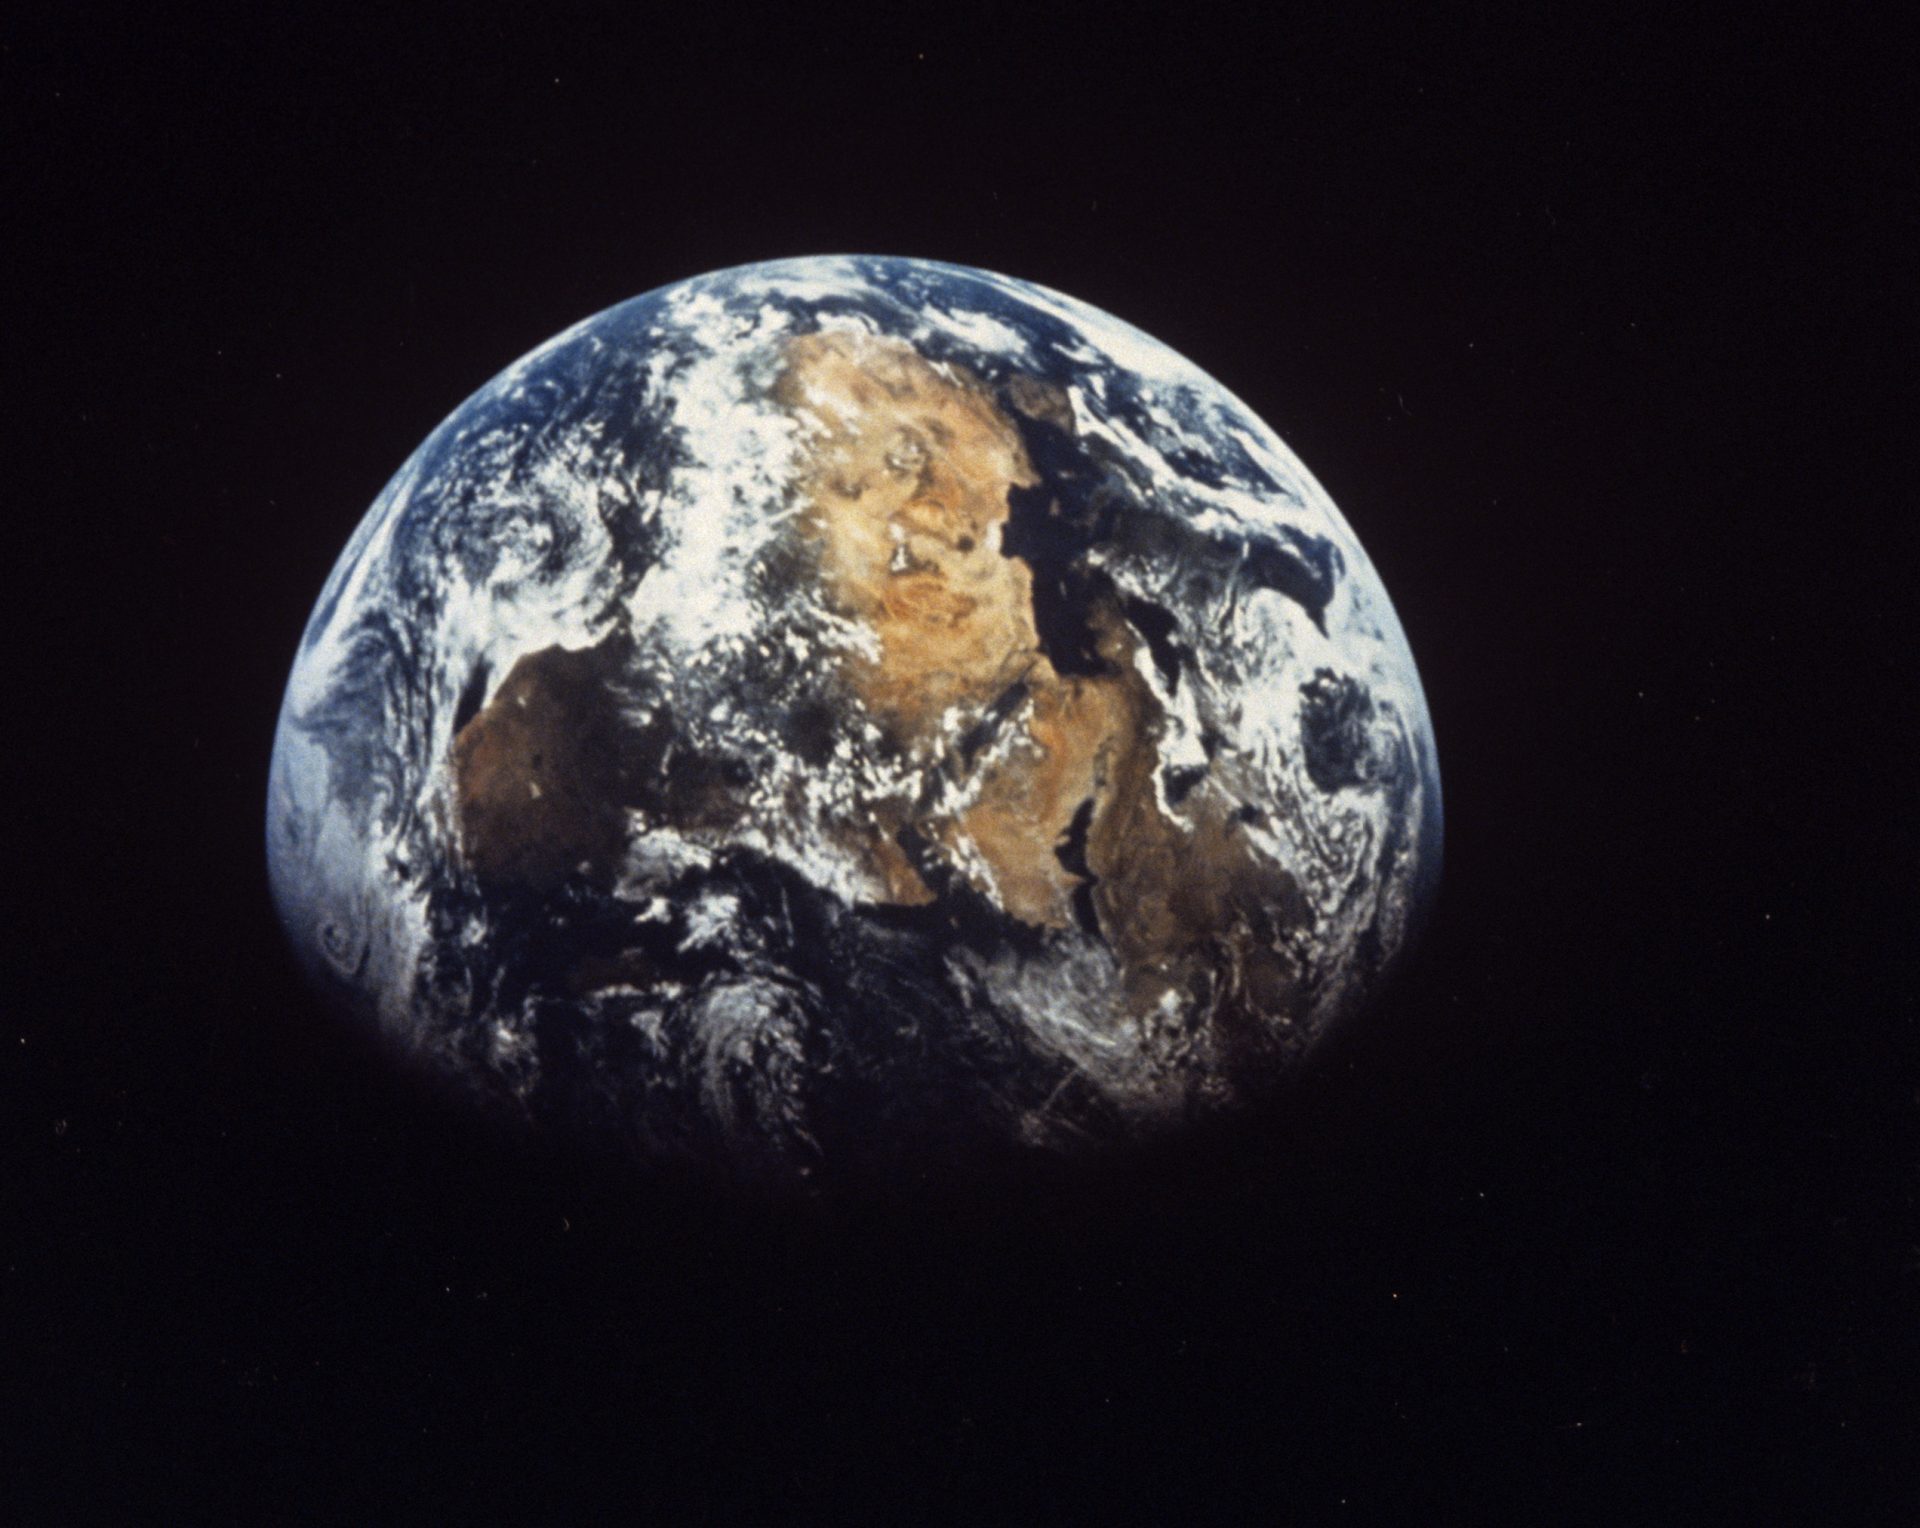 Vista del planeta Tierra, cuyo núcleo interno parece haberse frenado y estar invirtiendo su trayectoria.